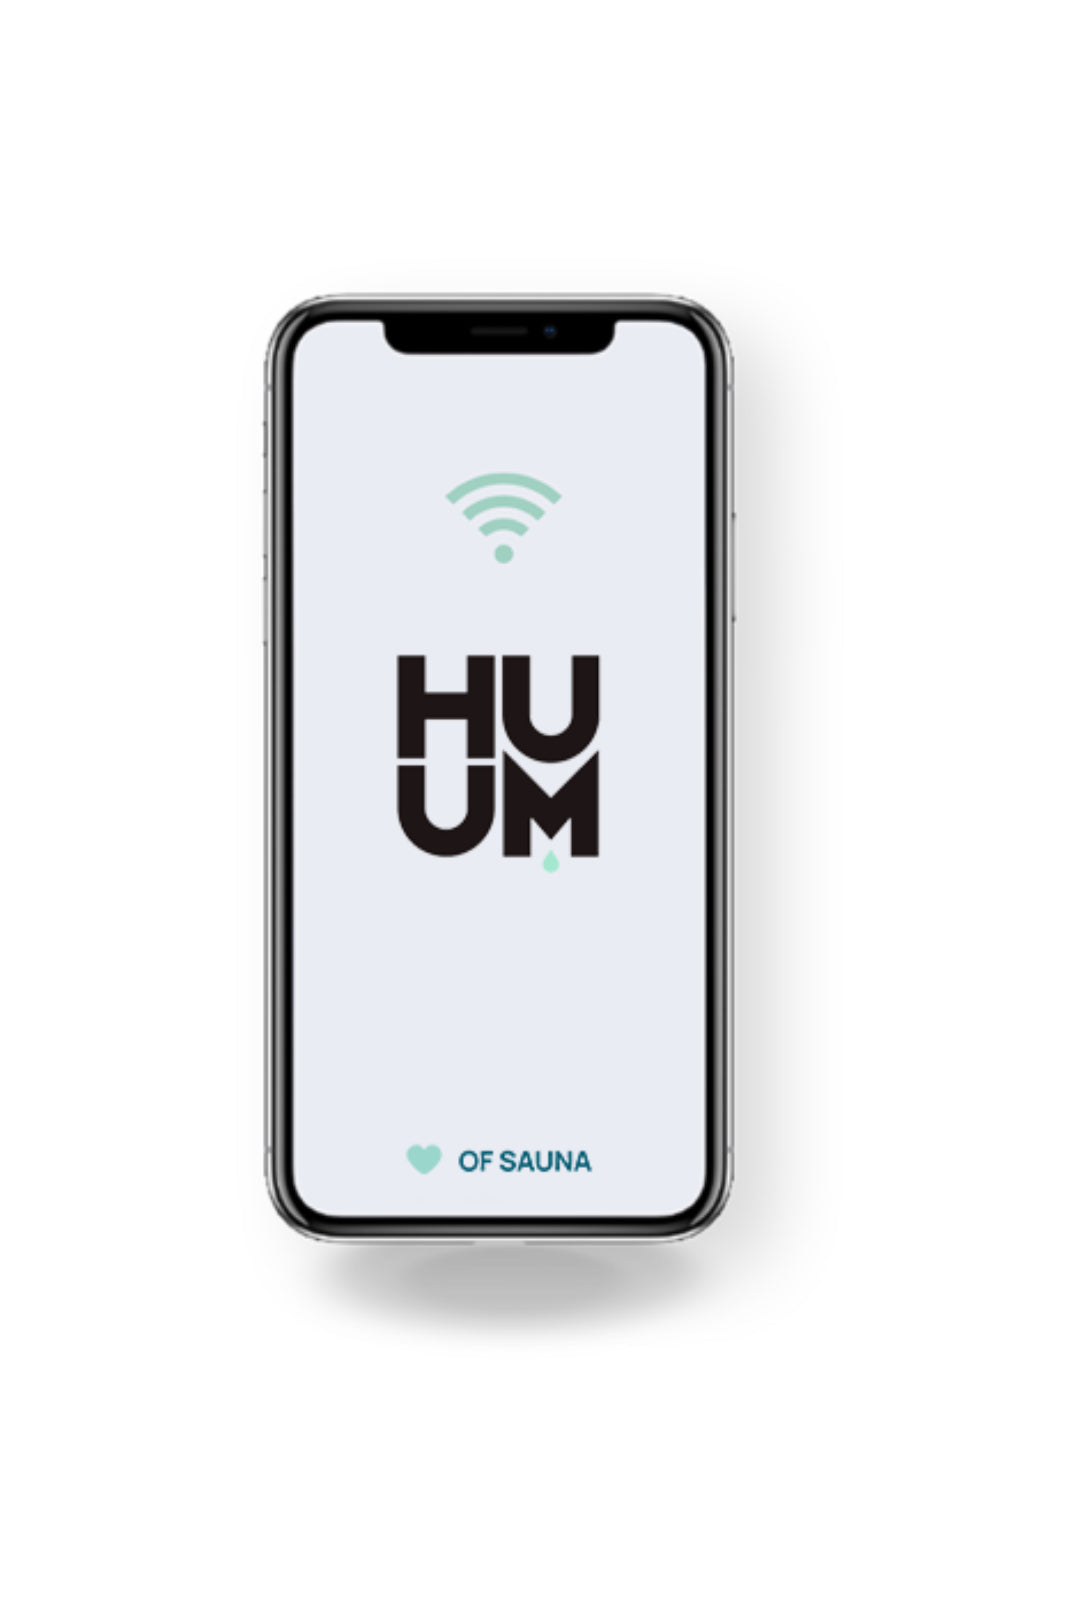 HUUM sauna control unit wifi mobile app